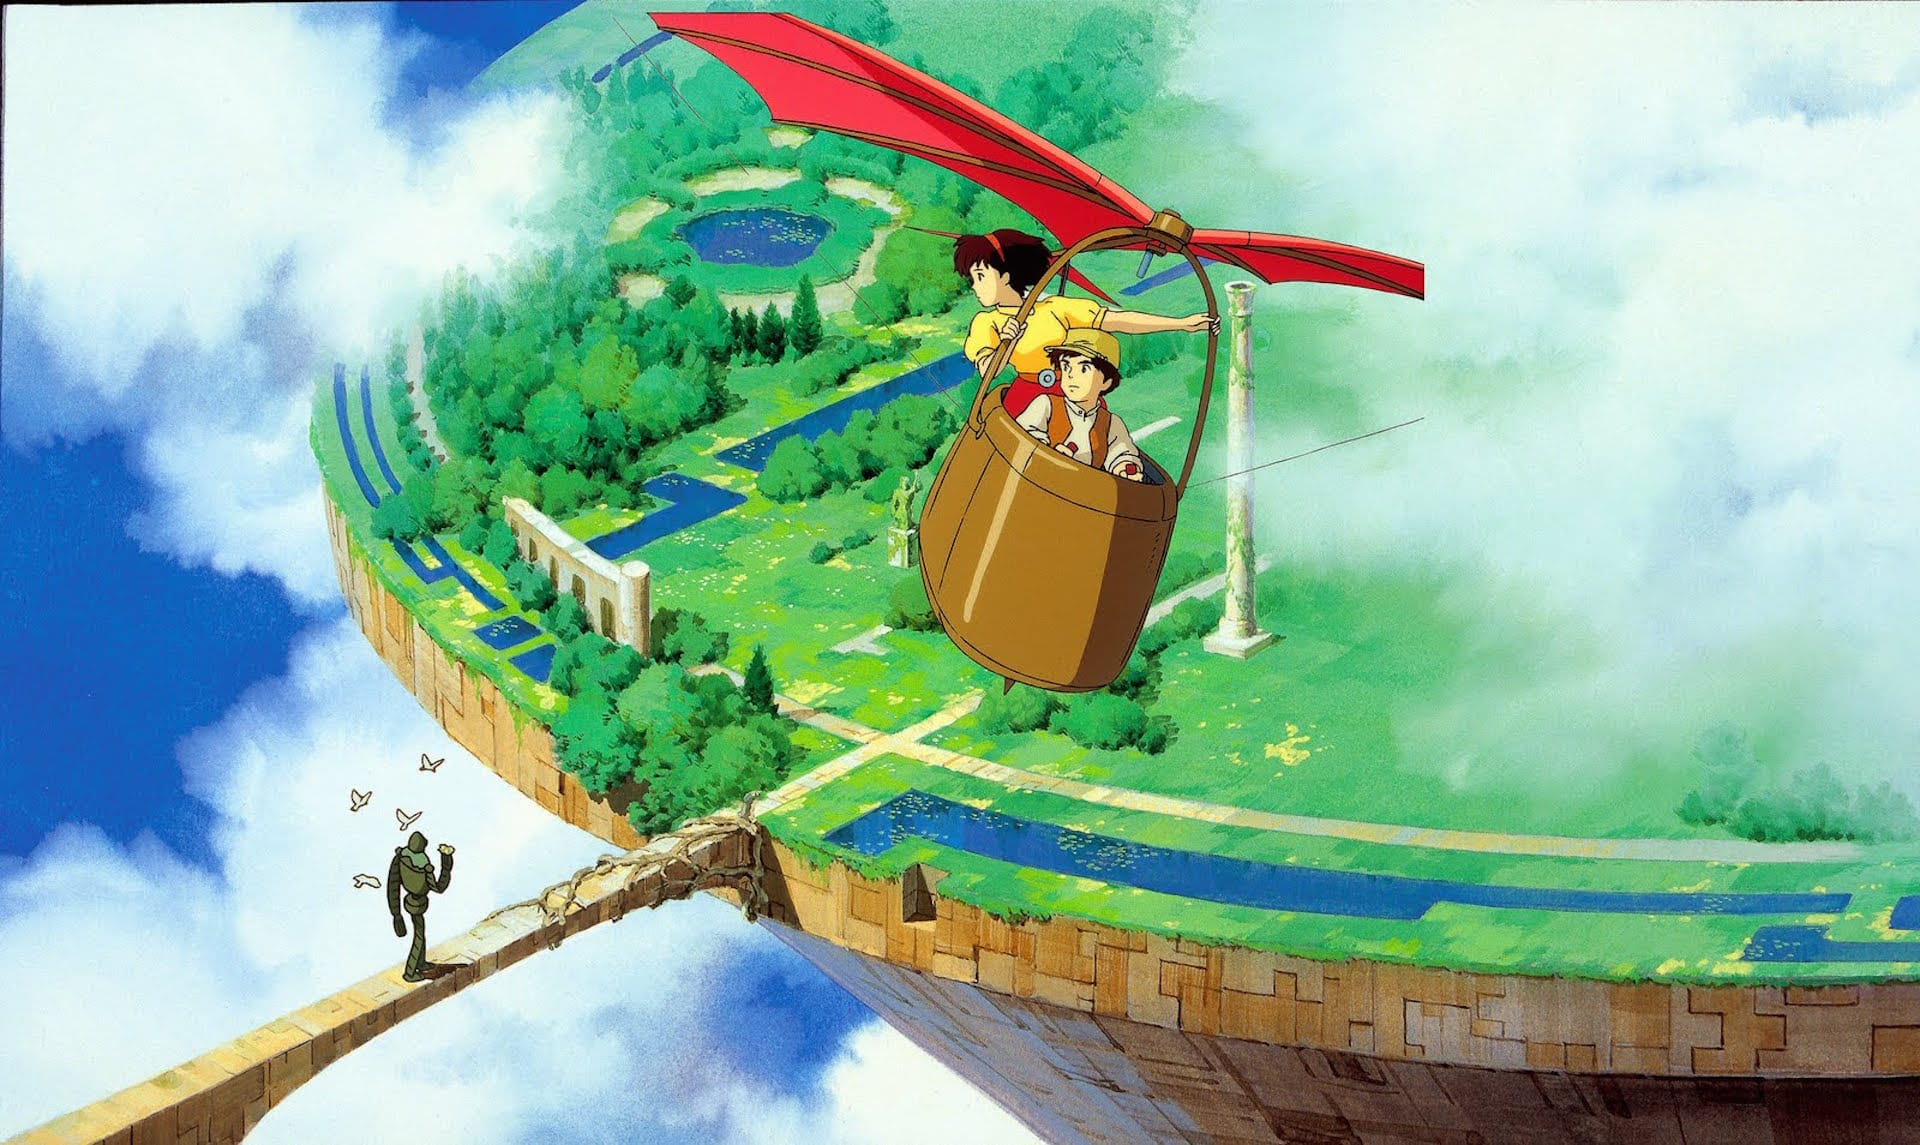 Studio Ghibli - Sfondi a tema gratis per le videochiamate